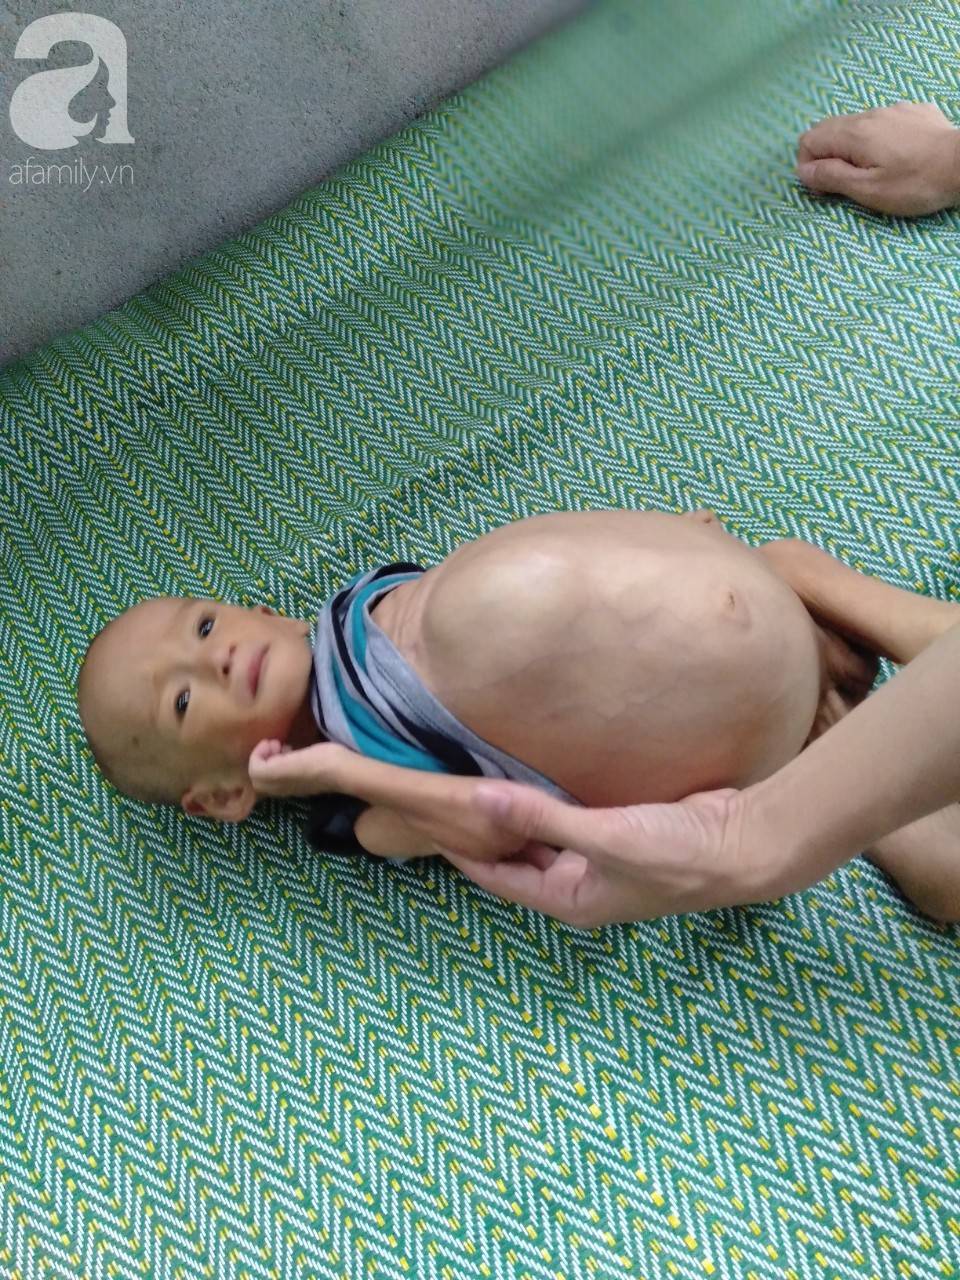 Sự sống mong manh của bé trai 1 tuổi, chỉ nặng 6kg, bụng phình to như cái trống mà mẹ nghèo không tiền chữa trị-10